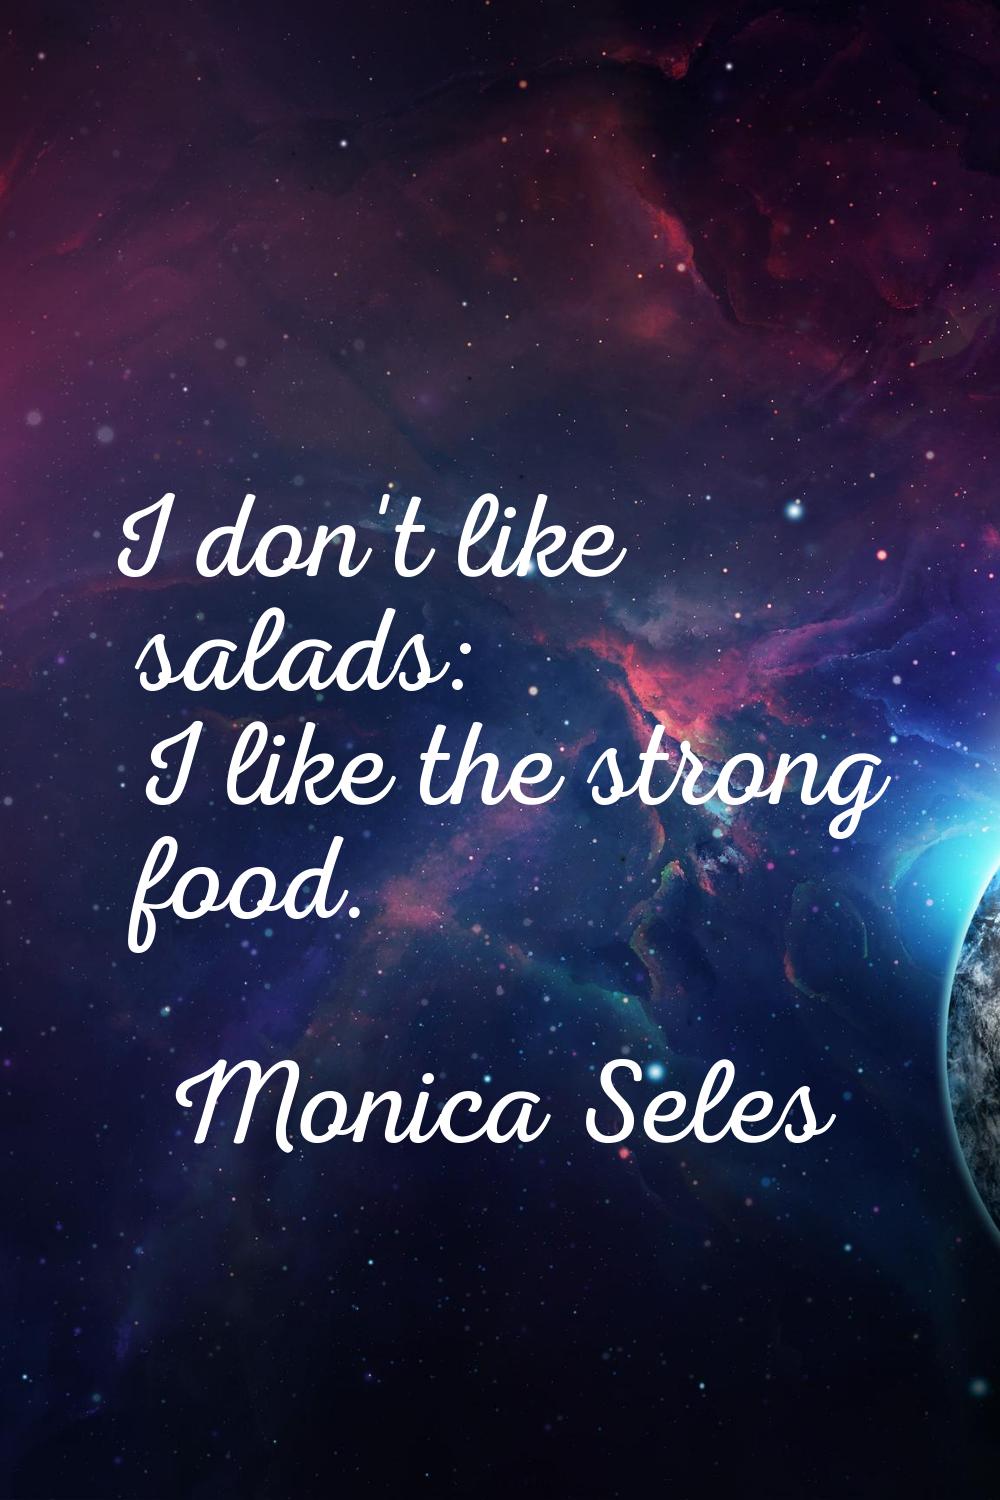 I don't like salads: I like the strong food.